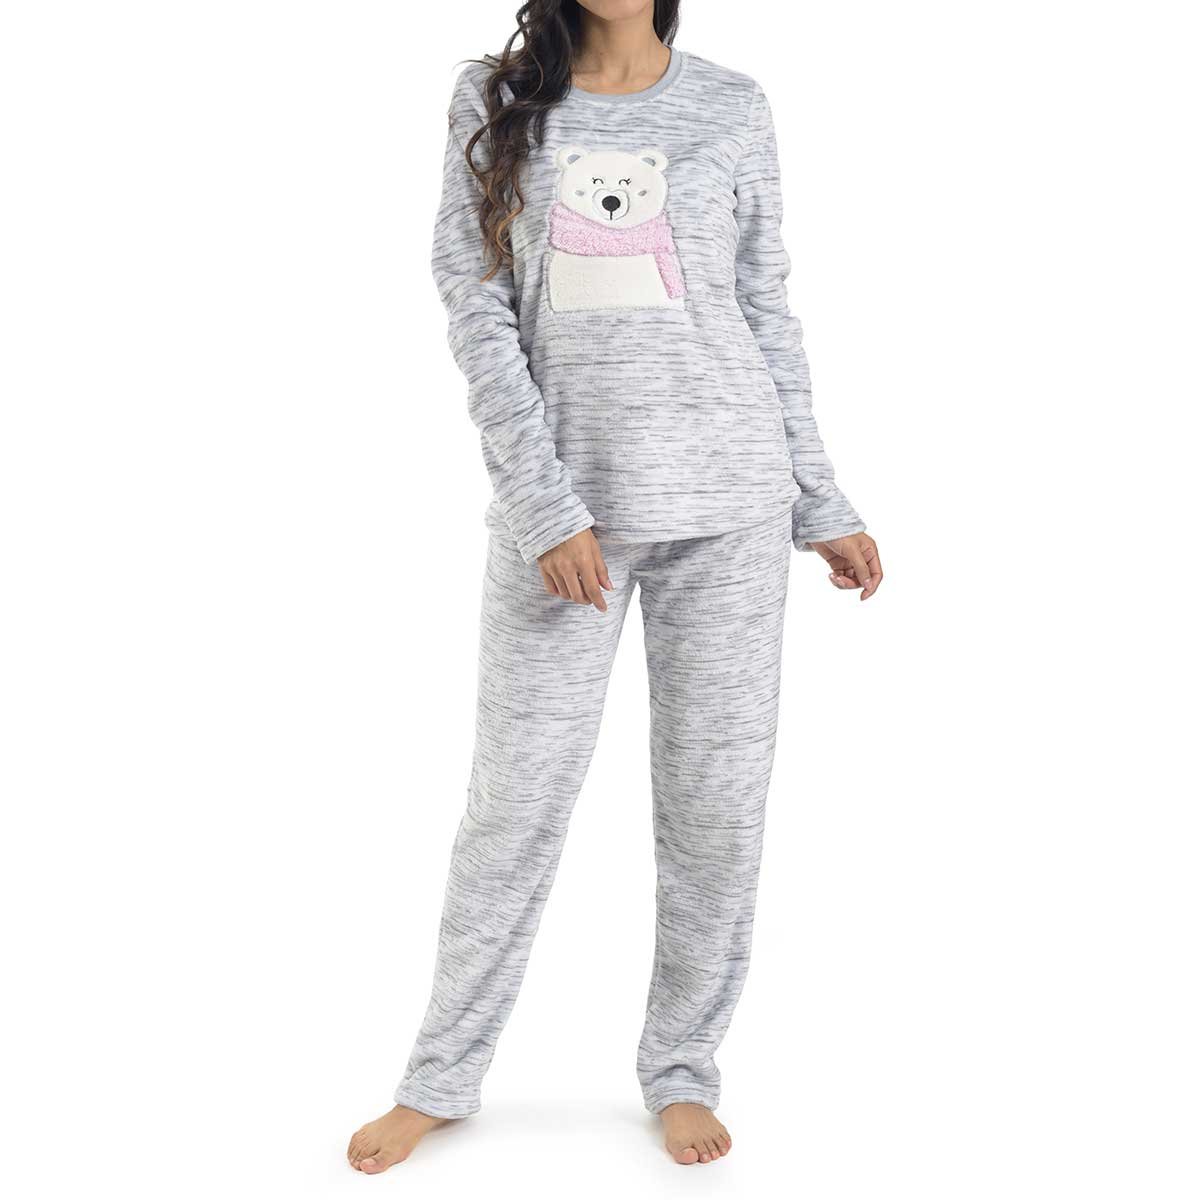 Pijama Flannel con Oso Estampado en Playera la Nuit